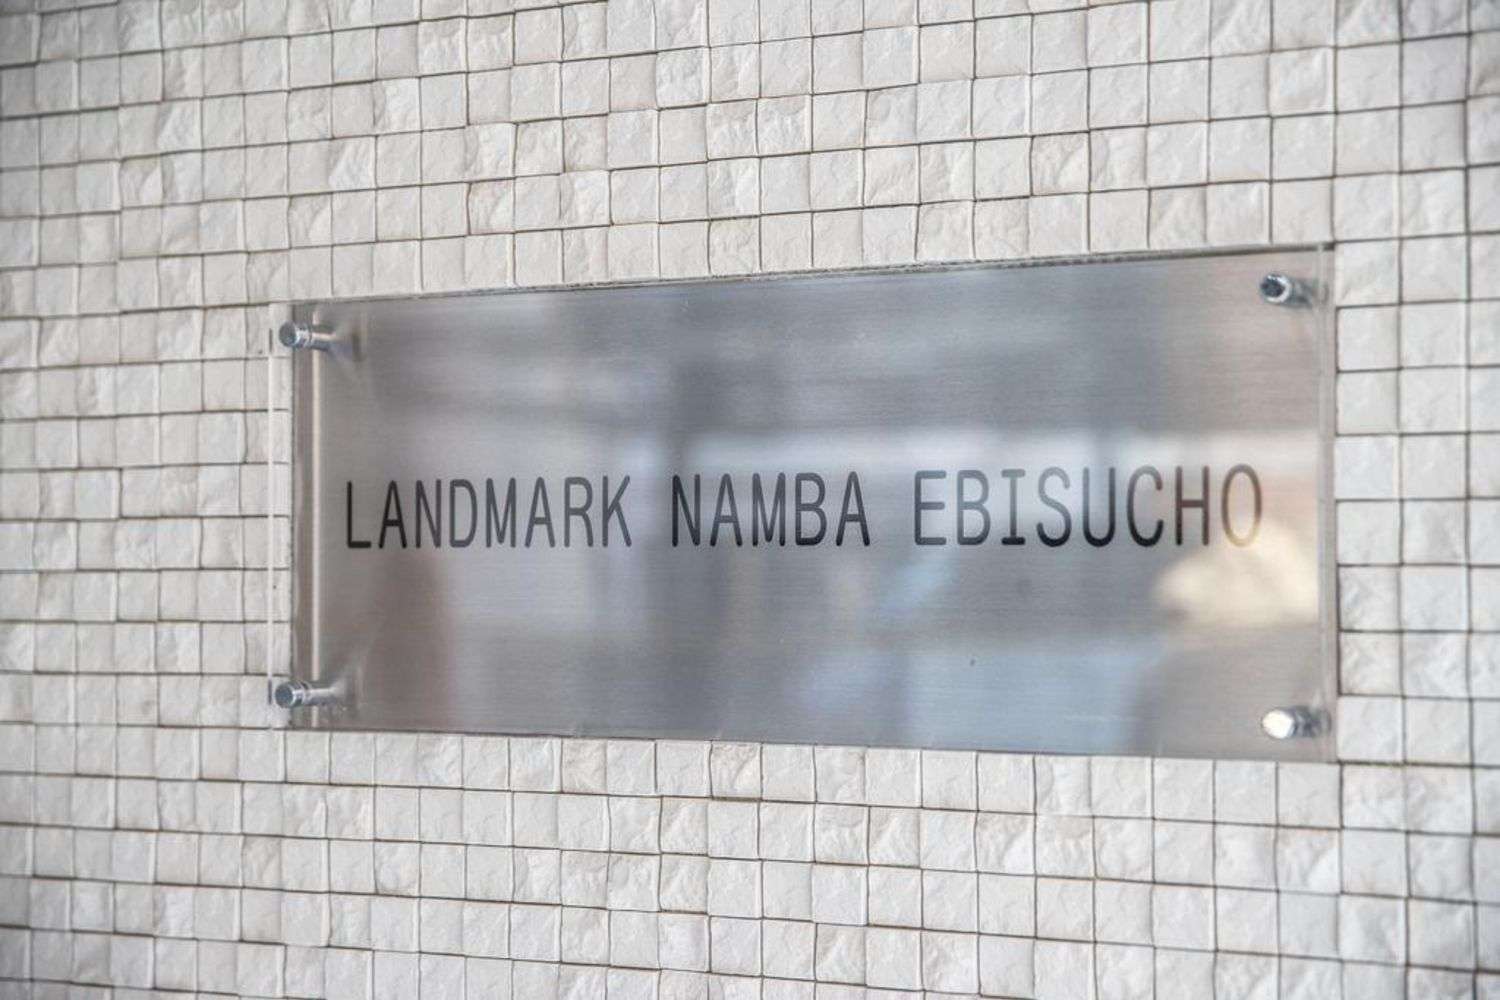 Landmark Namba Ebisucho